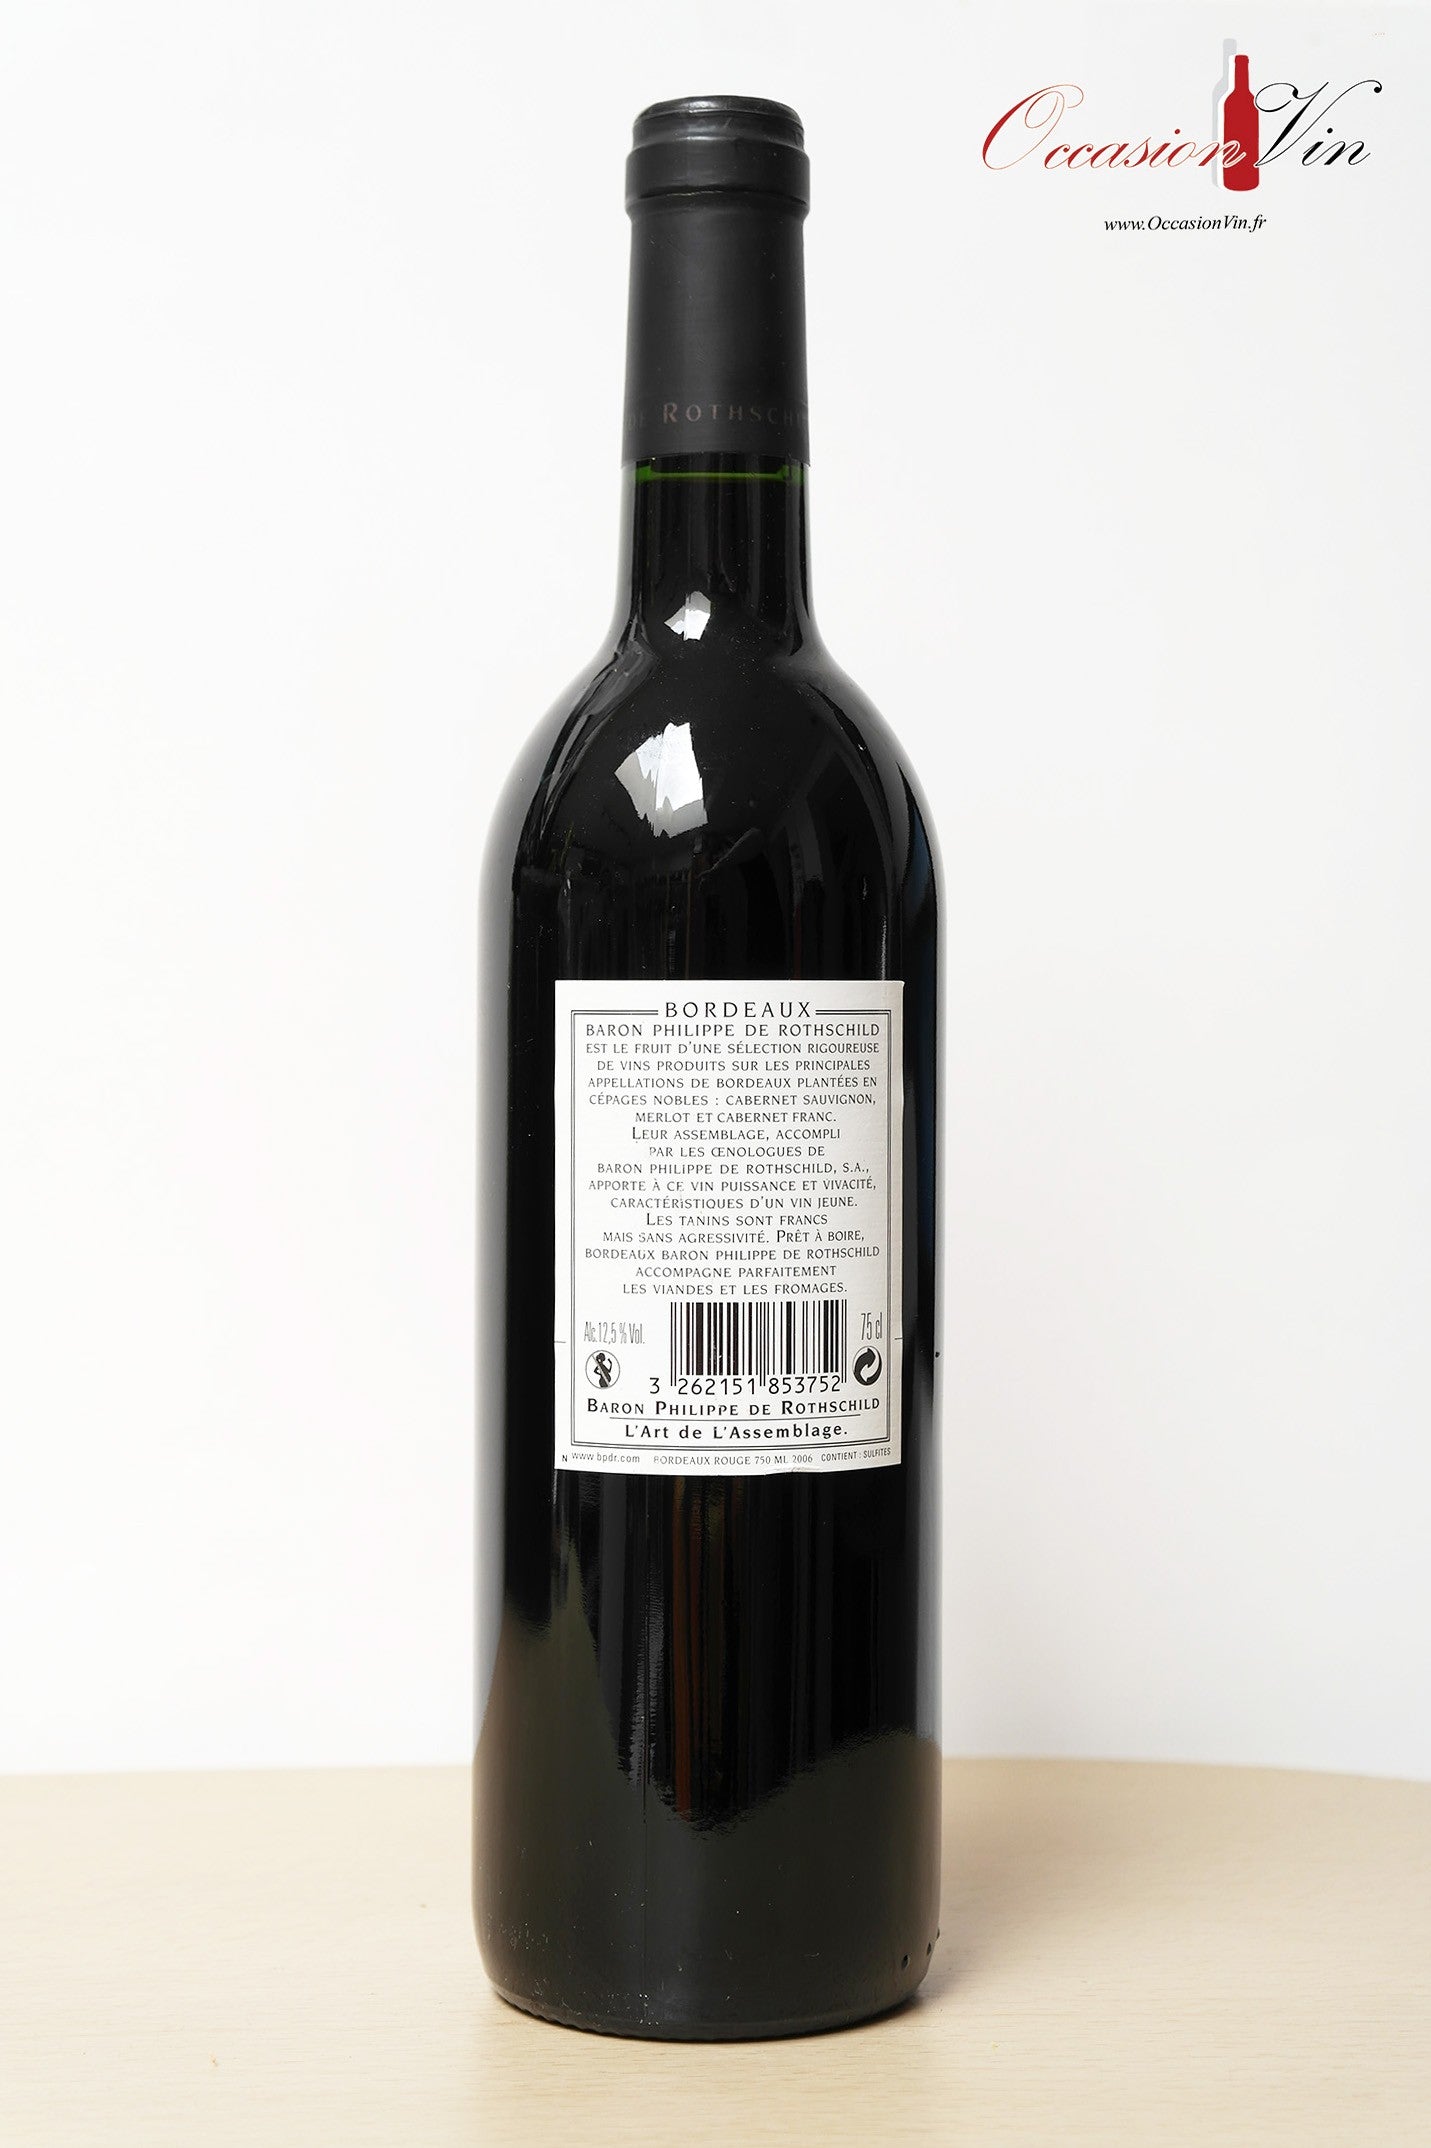 Bordeaux Baron Phillipe de Rotschild Vin 2006